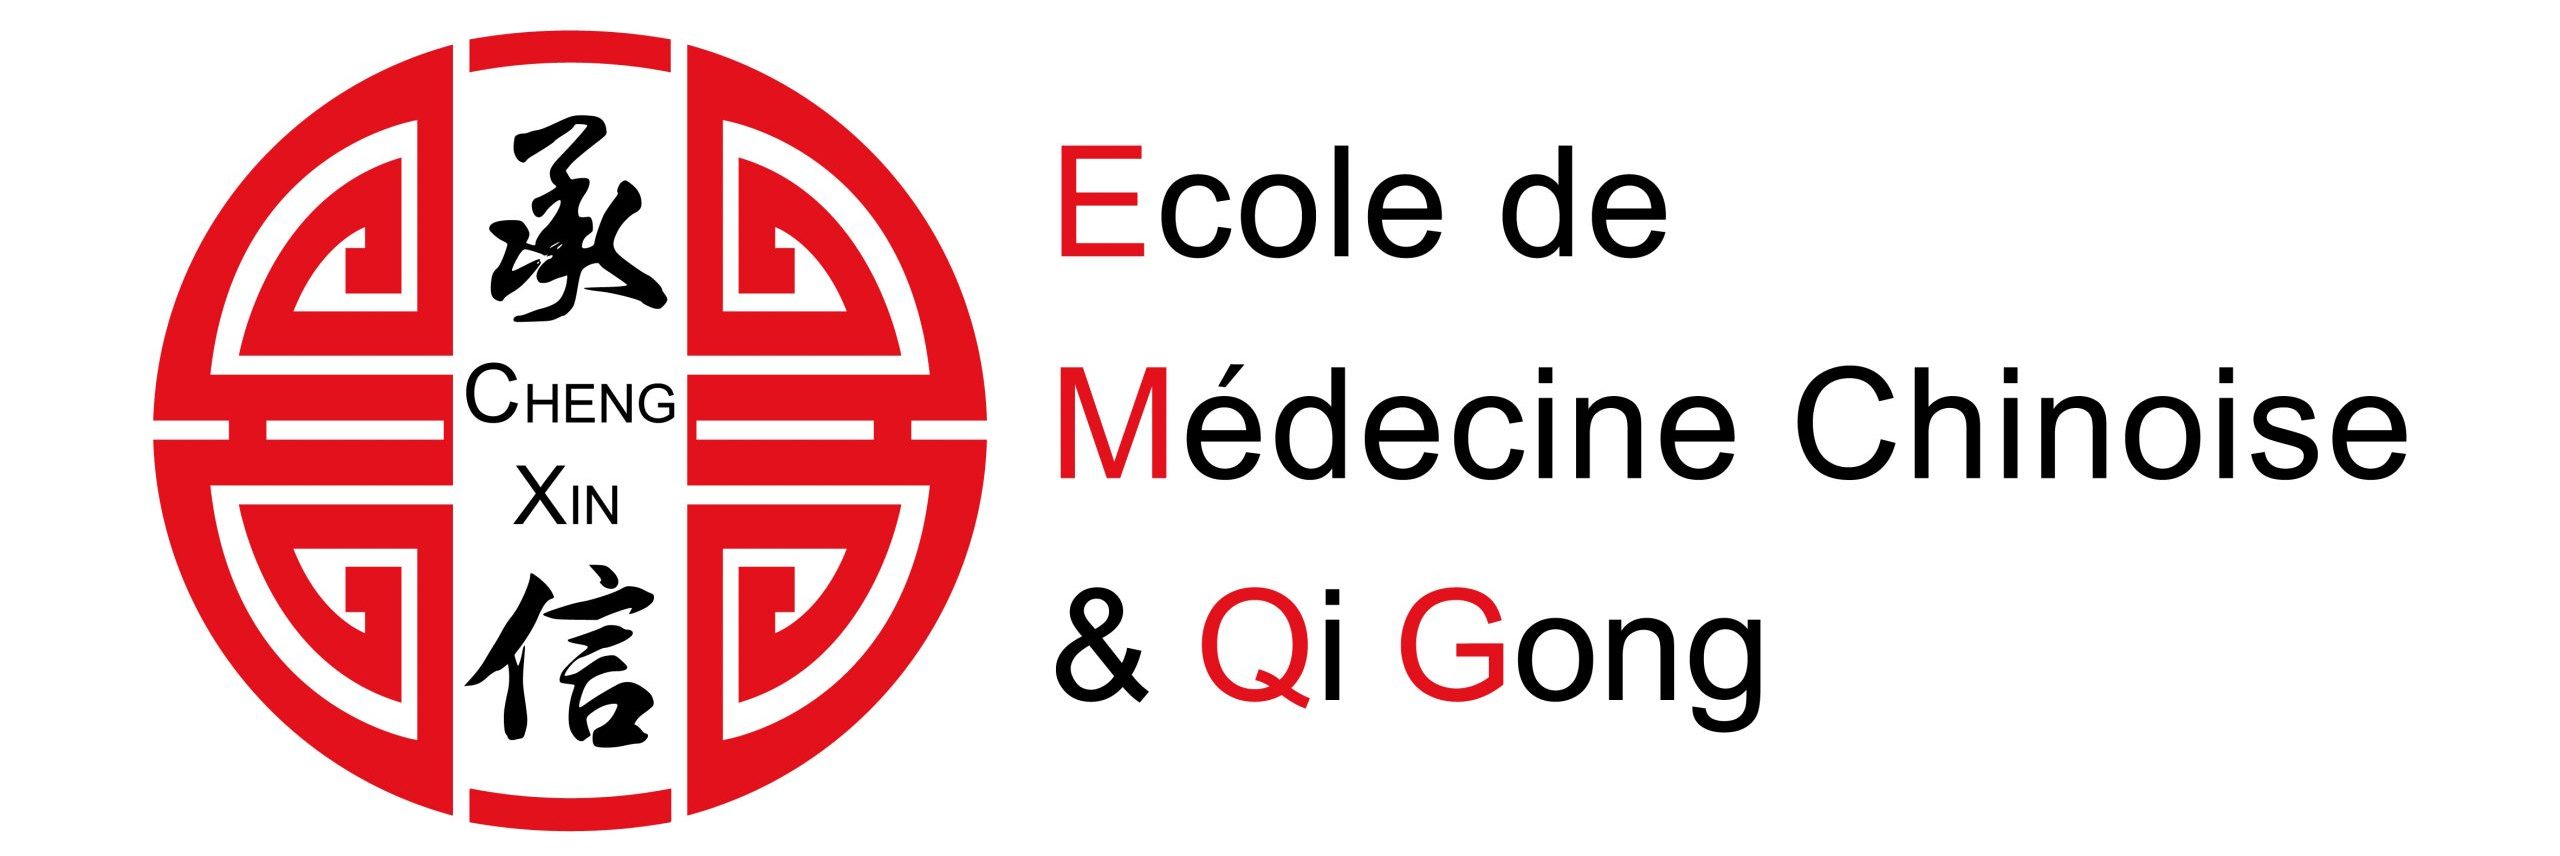 Chéng Xin Ecole Médecine Chinoise et Qi Gong – Cheng Xin – EMCQG